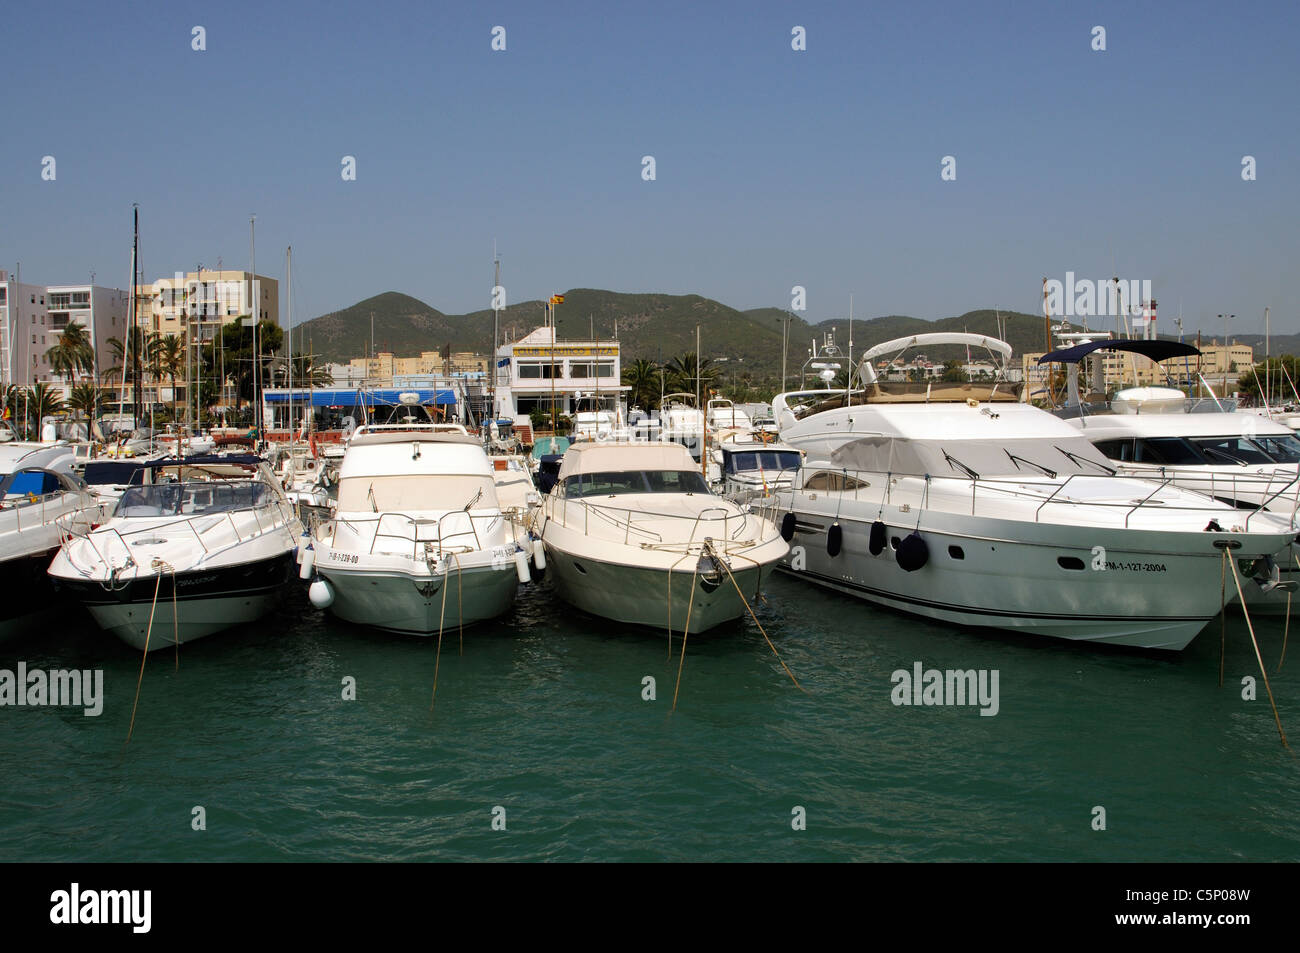 Club Nautico Ibiza marina in Eivissa on the Spanish Island of Ibiza Stock Photo